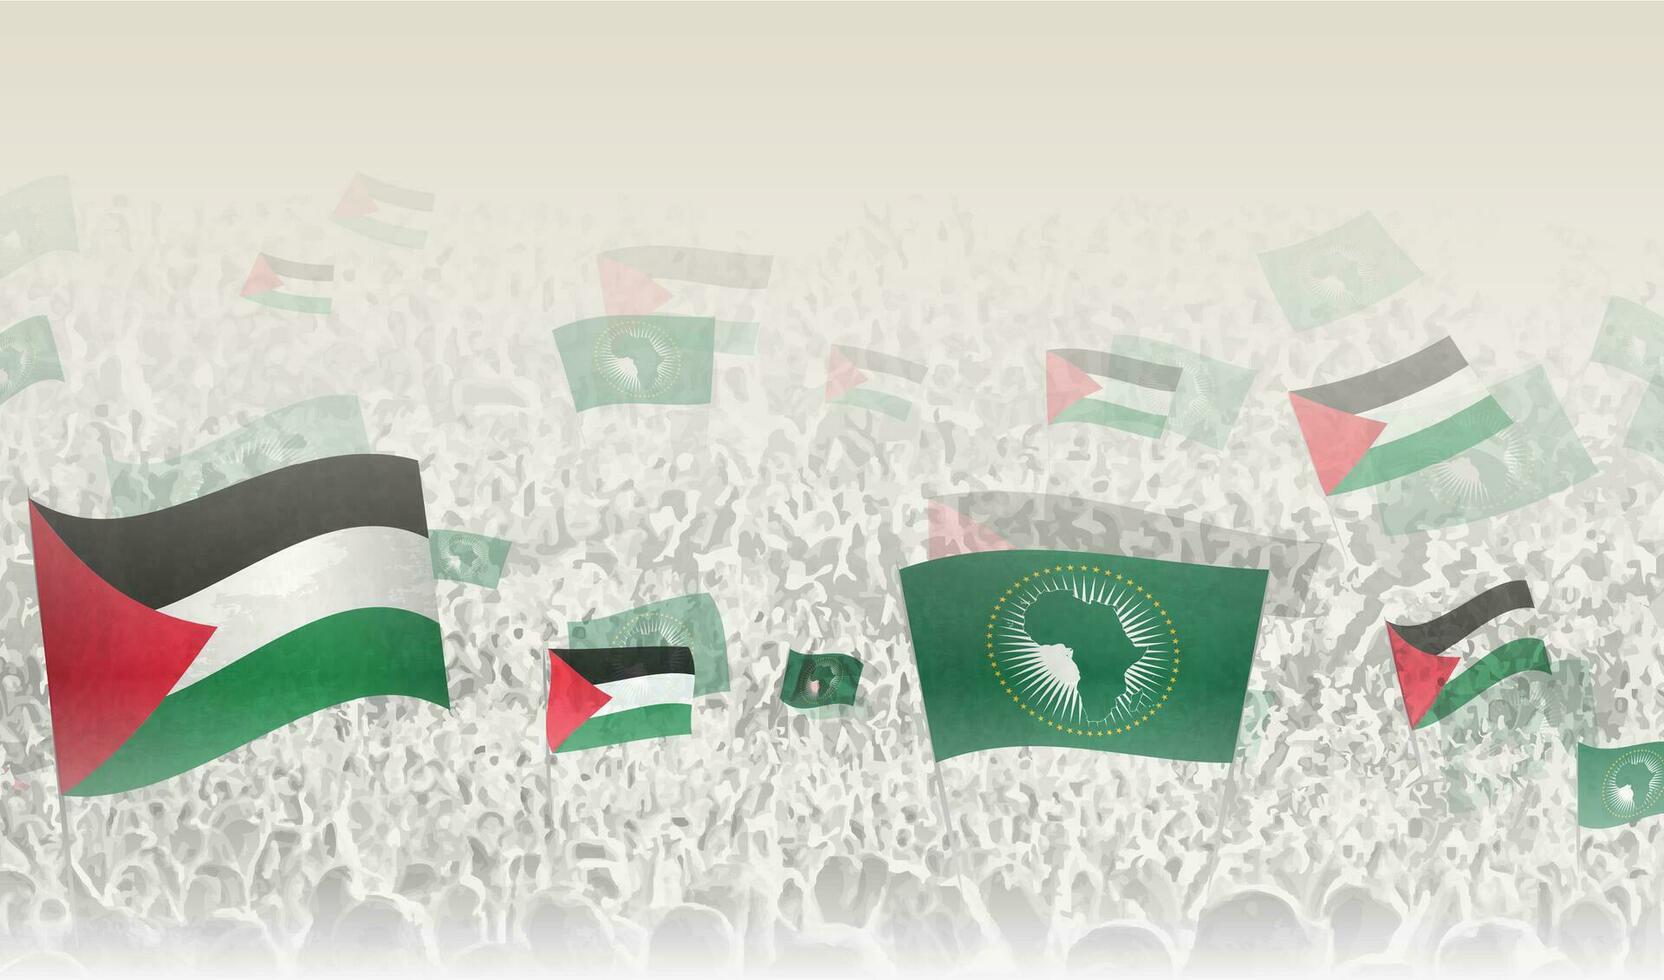 Palestina y africano Unión banderas en un multitud de aplausos gente. vector